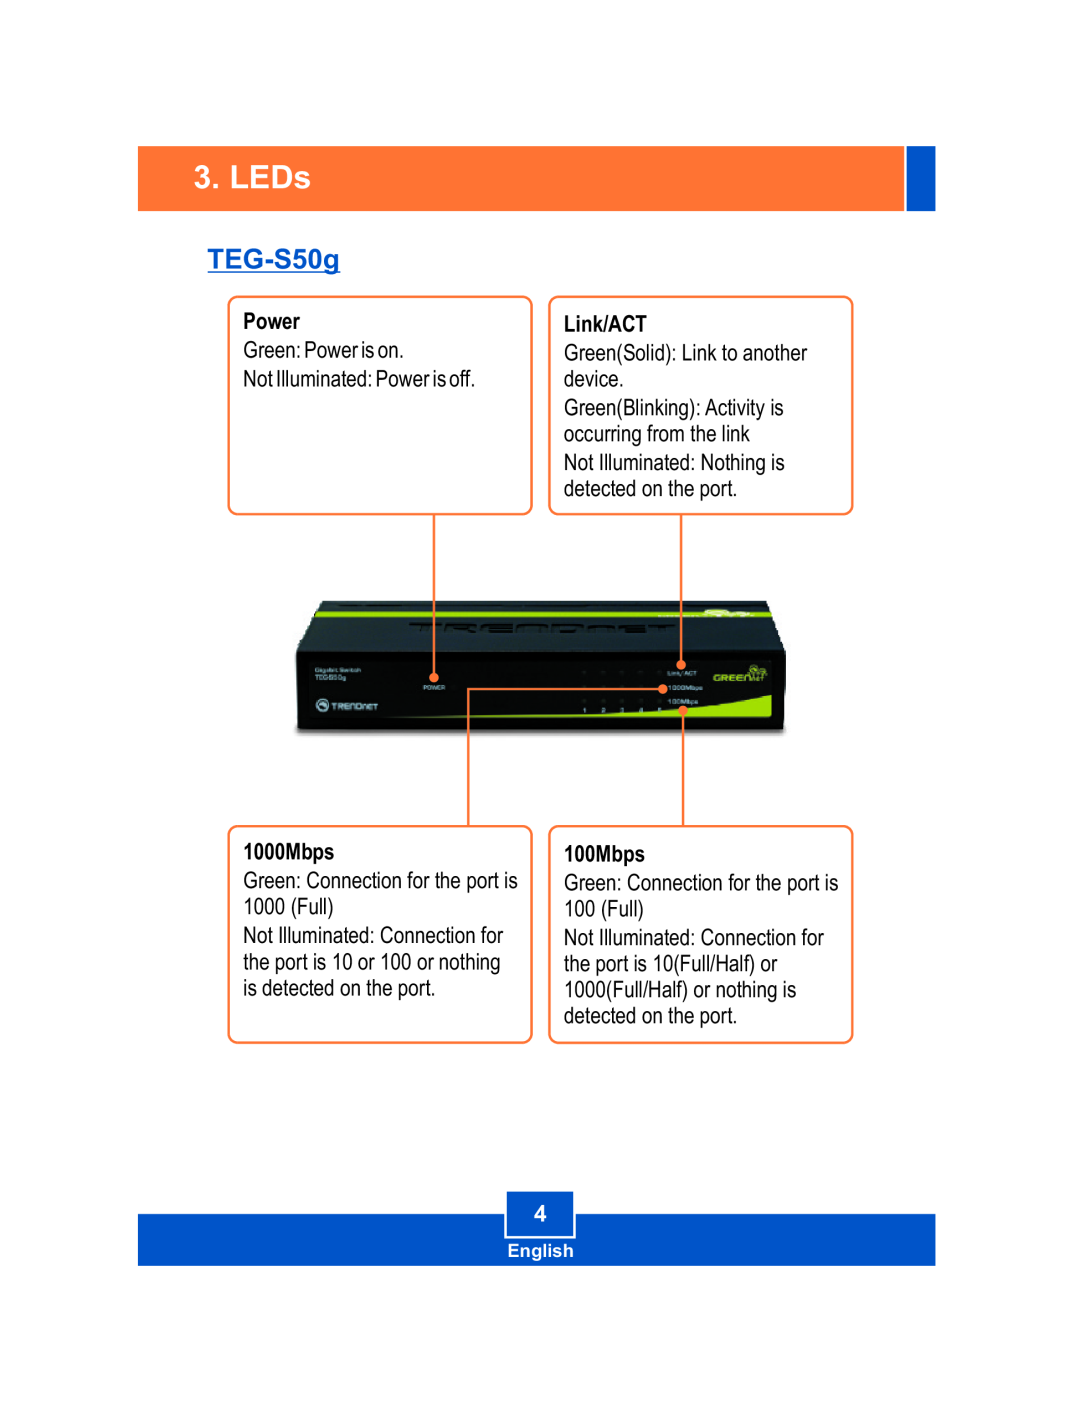 TRENDnet TEGS50G manual LEDs, TEG-S50g, Power, 1000Mbps, Link/ACT, 100Mbps 